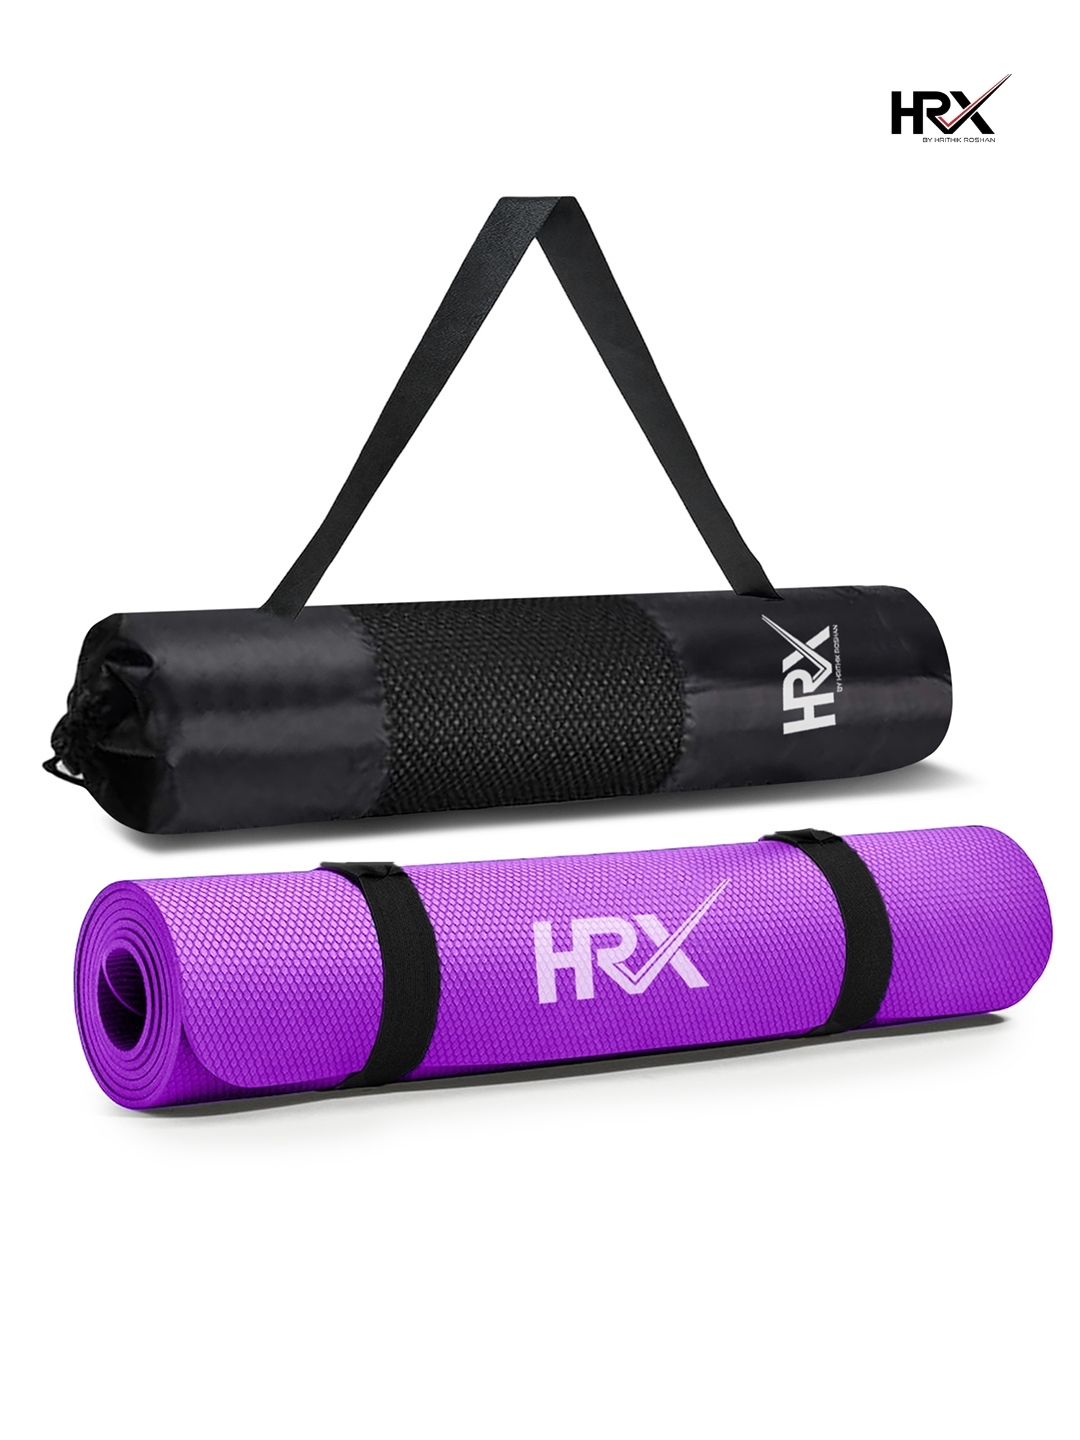 7% OFF on Relax Fitness Purple 6 mm Yoga Mat on Flipkart